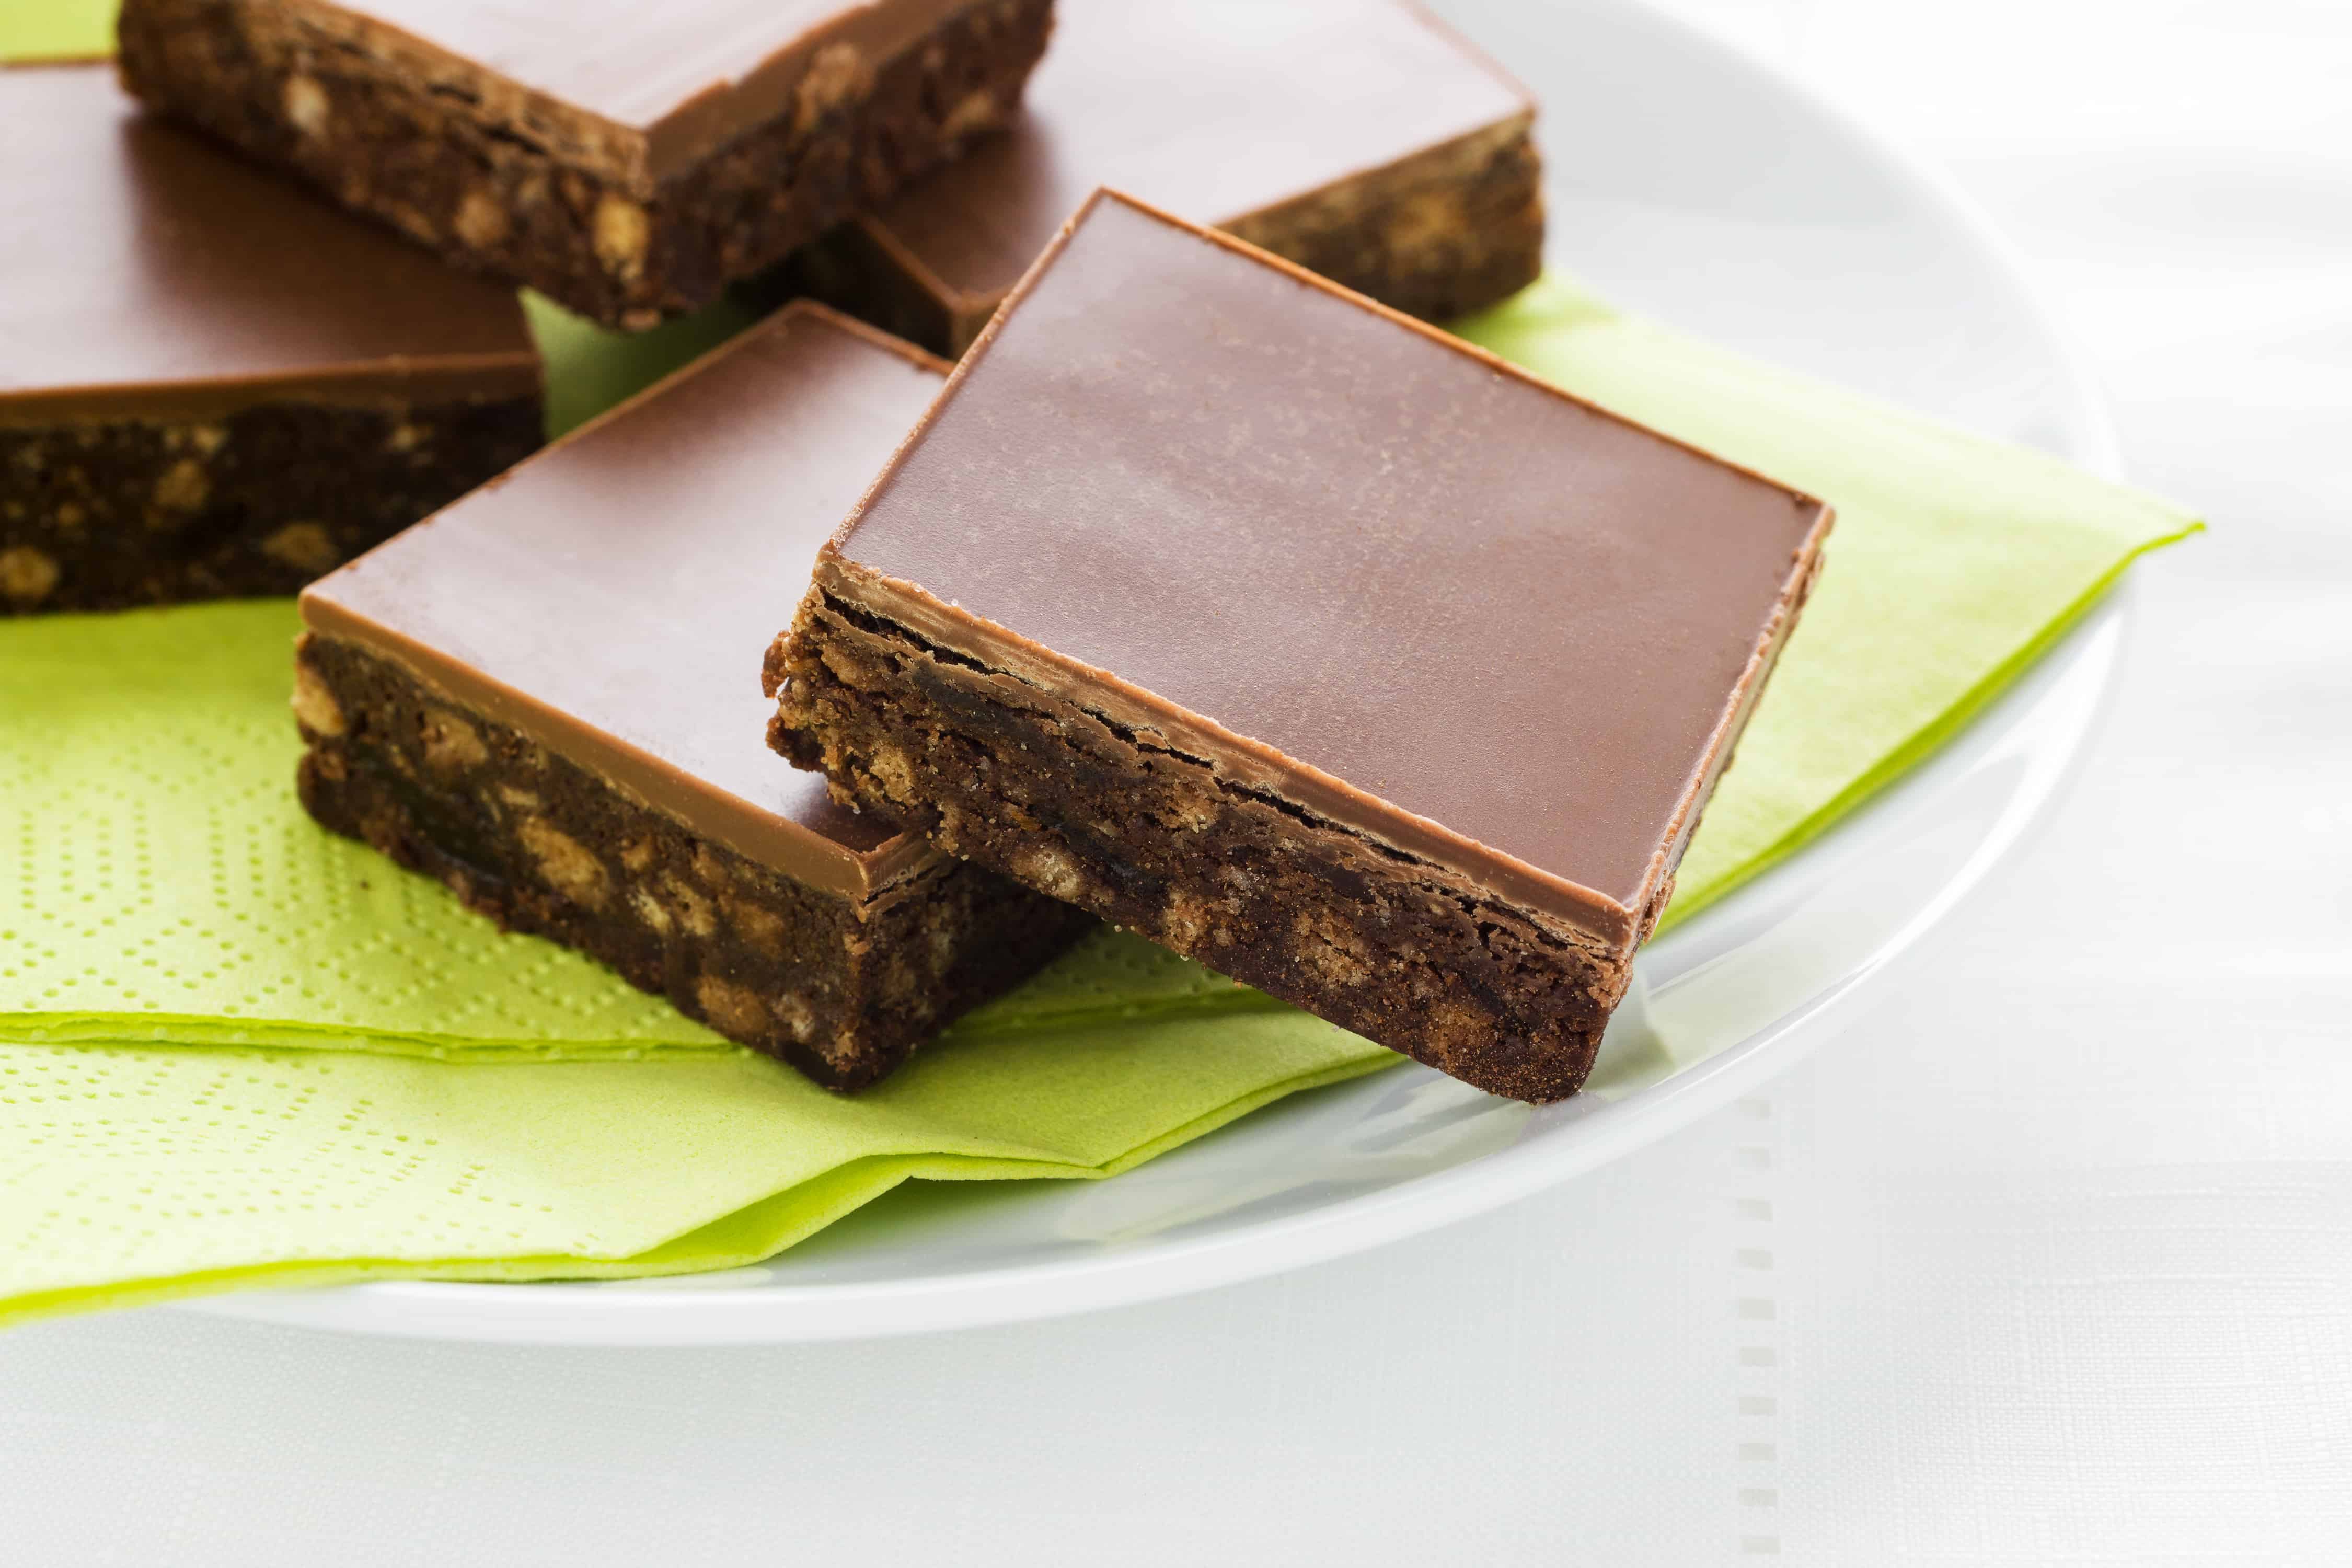 巧克力软糖块放在白色盘子和绿色餐巾上